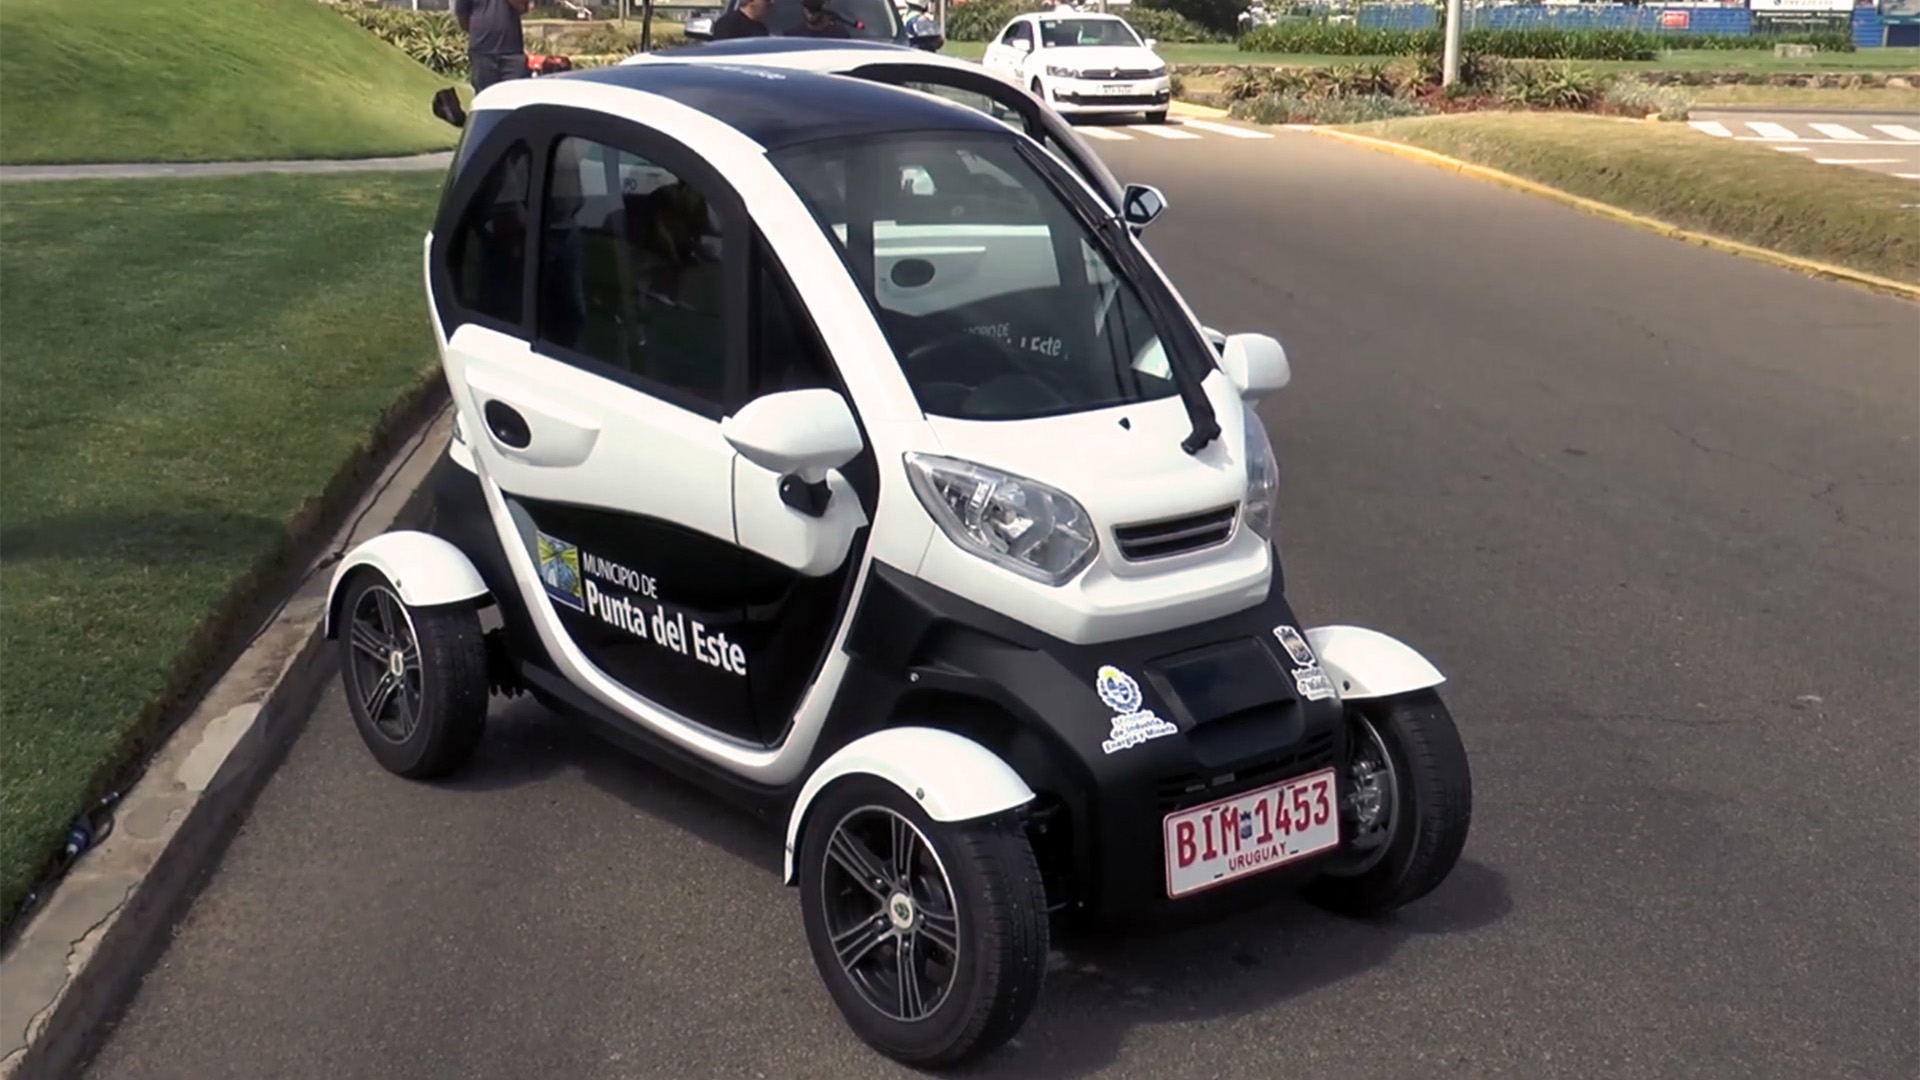 La ciudad de Punta del Este adquirió dos Mobility CityQuad para reemplazar dos vehículos que utilizaban los inspectores. Es una acción que se replicará en otras ciudades de Uruguay